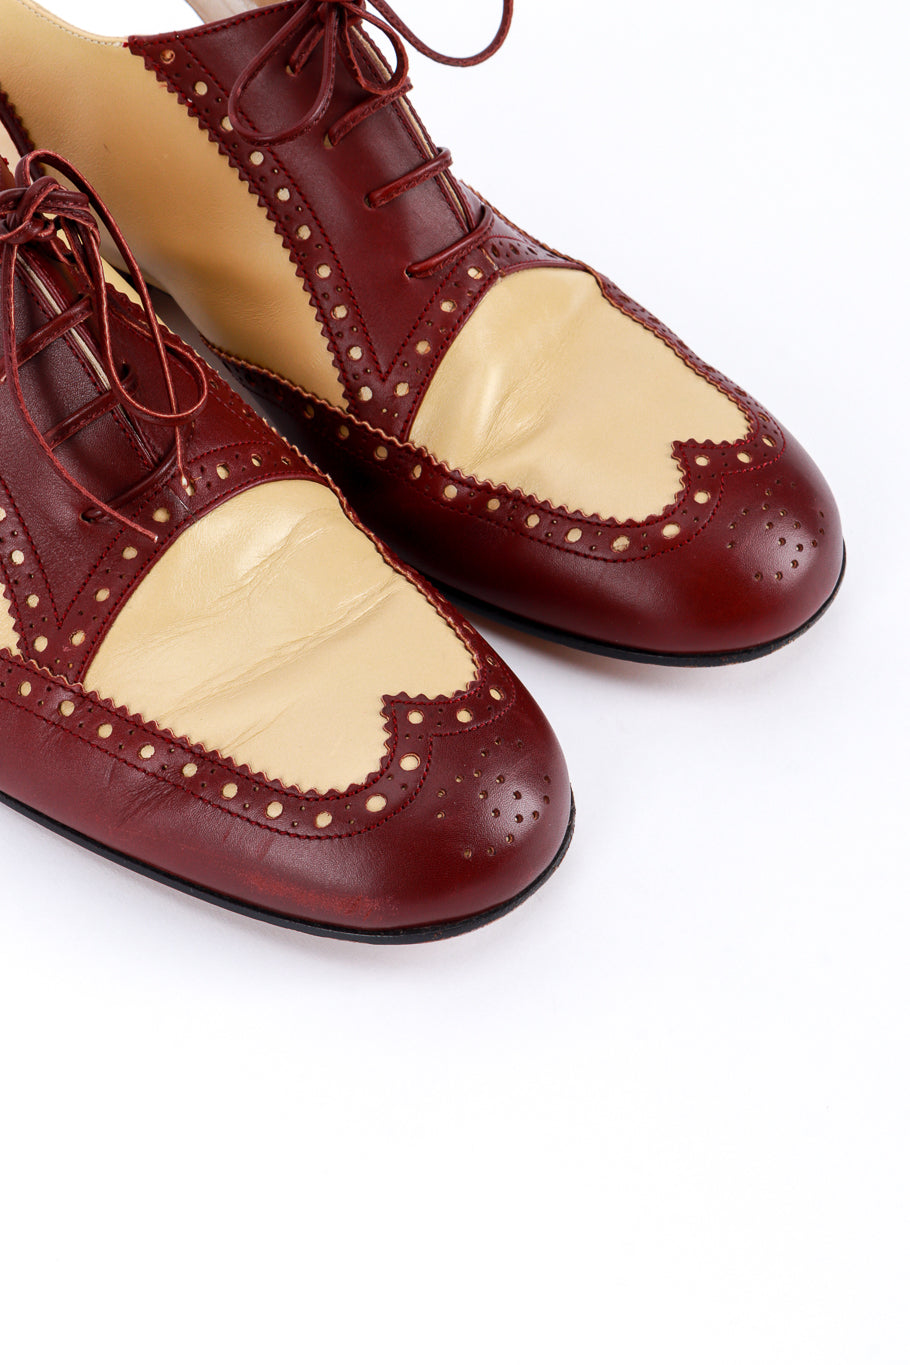 Vintage Chanel Two-Tone Slingback Brogues  toe closeup @recess la